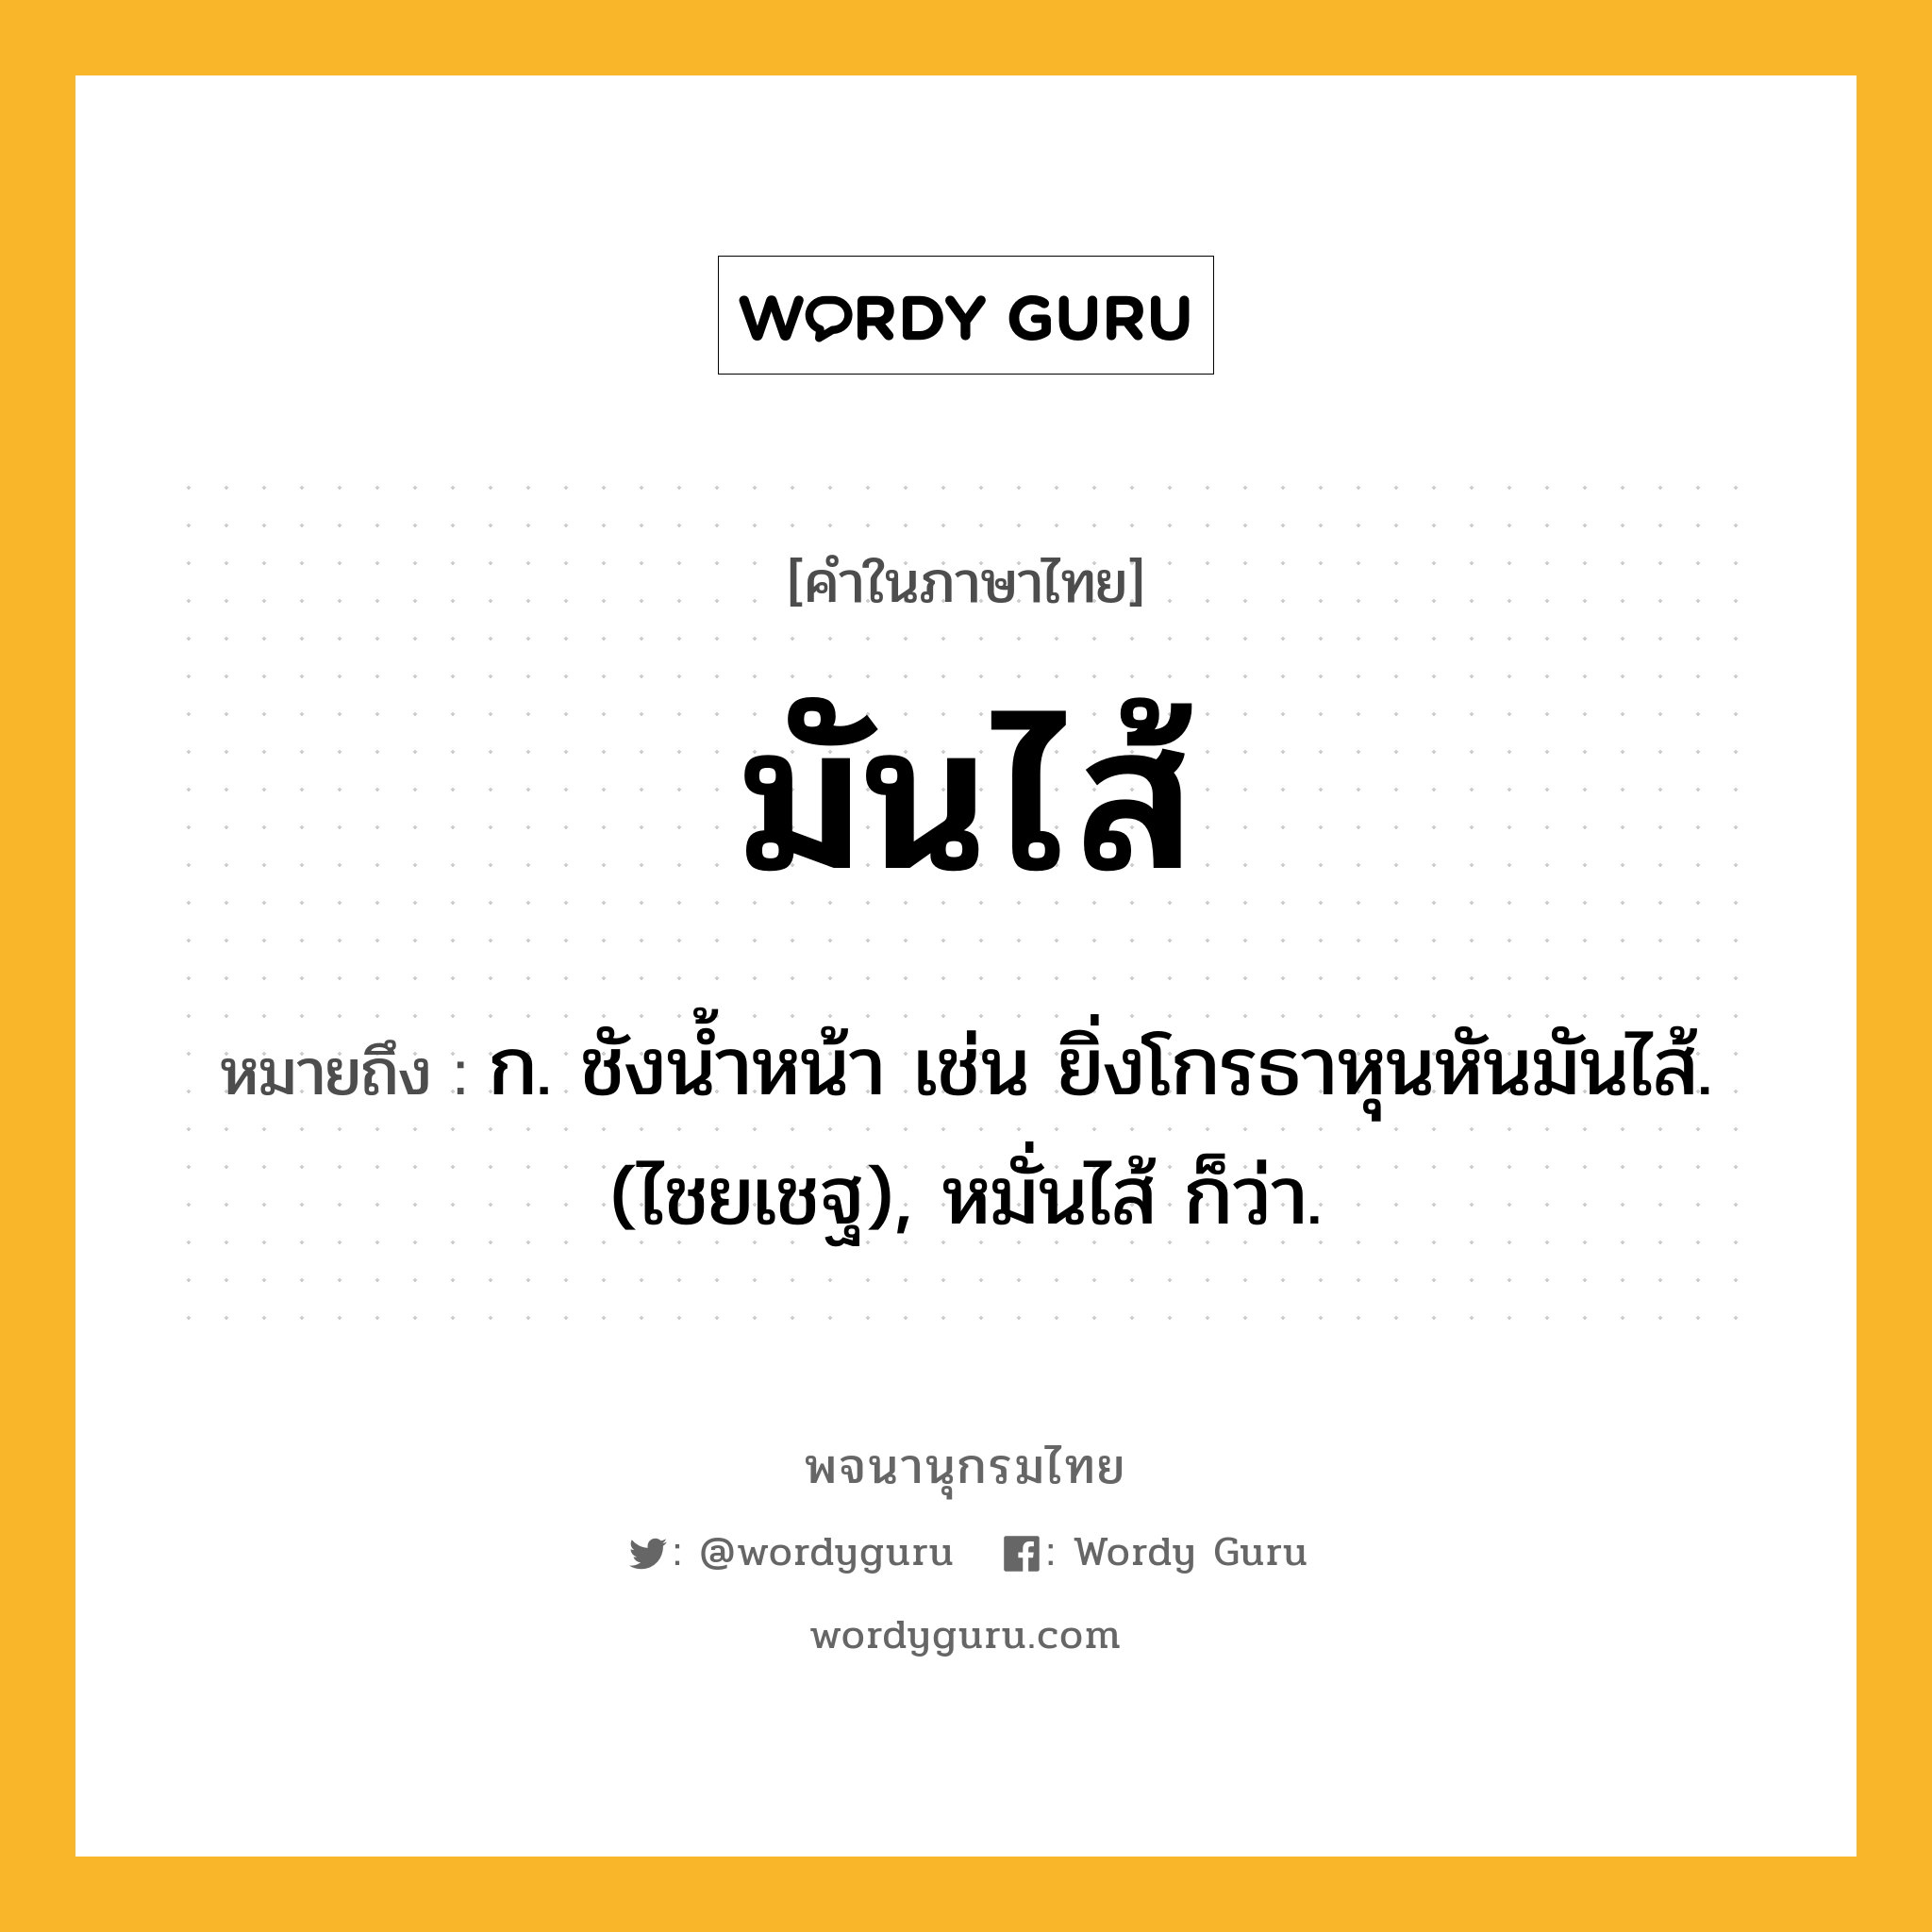 มันไส้ ความหมาย หมายถึงอะไร?, คำในภาษาไทย มันไส้ หมายถึง ก. ชังนํ้าหน้า เช่น ยิ่งโกรธาหุนหันมันไส้. (ไชยเชฐ), หมั่นไส้ ก็ว่า.